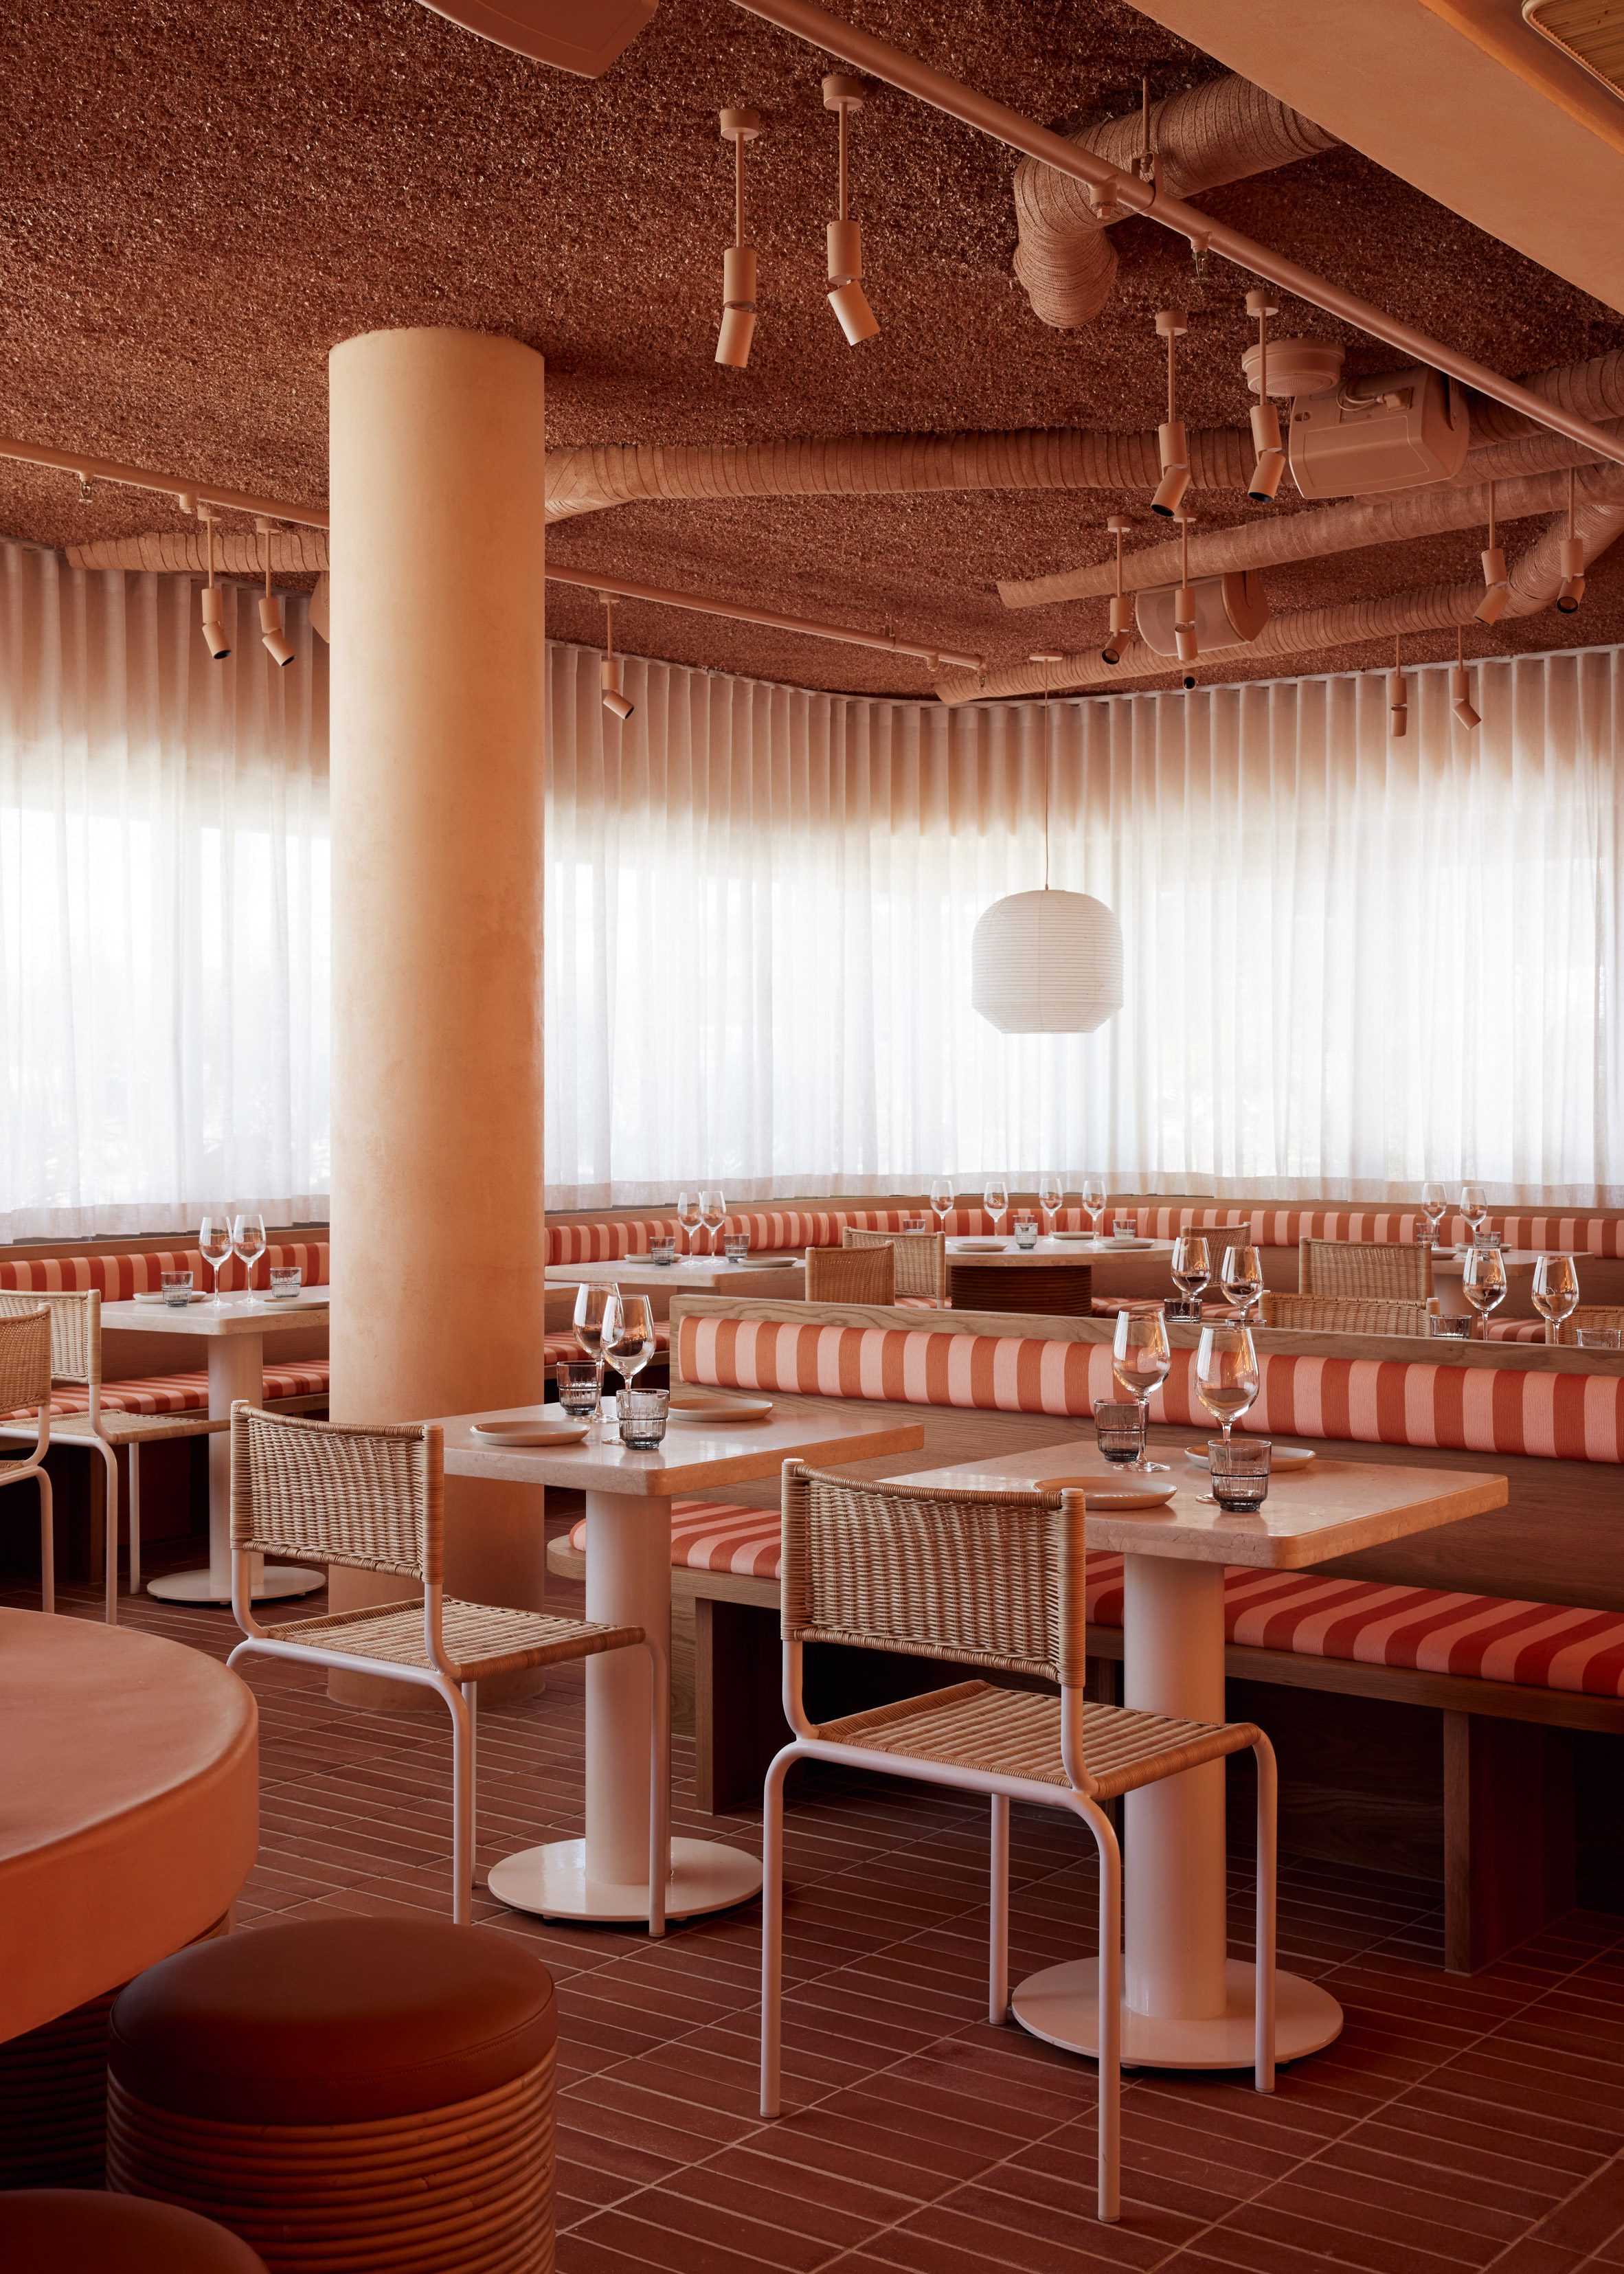 Studio Plenty在拜伦湾设计光年餐厅，让人感觉像是“一个温暖的拥抱”|ART-Arrakis | 建筑室内设计的创新与灵感